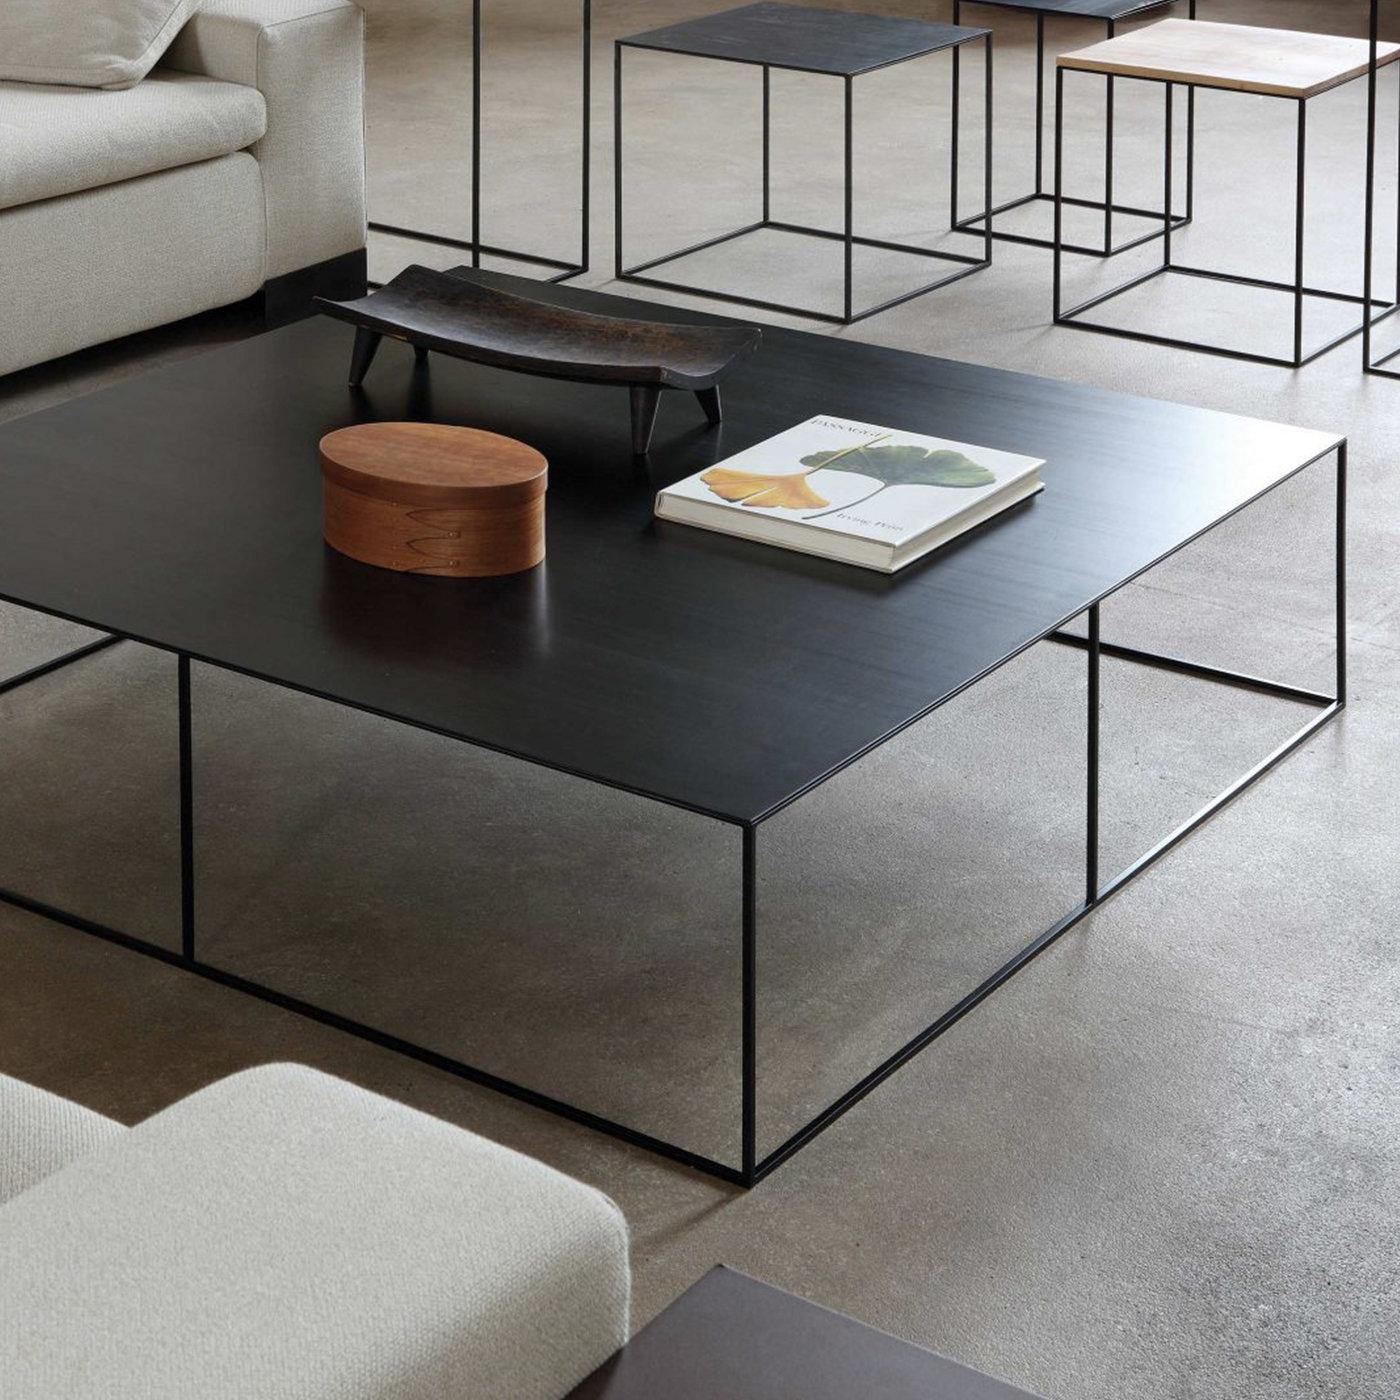 Cette table basse exquise s'imposera dans un décor noir et blanc ou de couleur neutre, en particulier s'il est contemporain ou industriel, et s'associera également à d'autres meubles noirs du même designer pour un look cohérent. La structure est